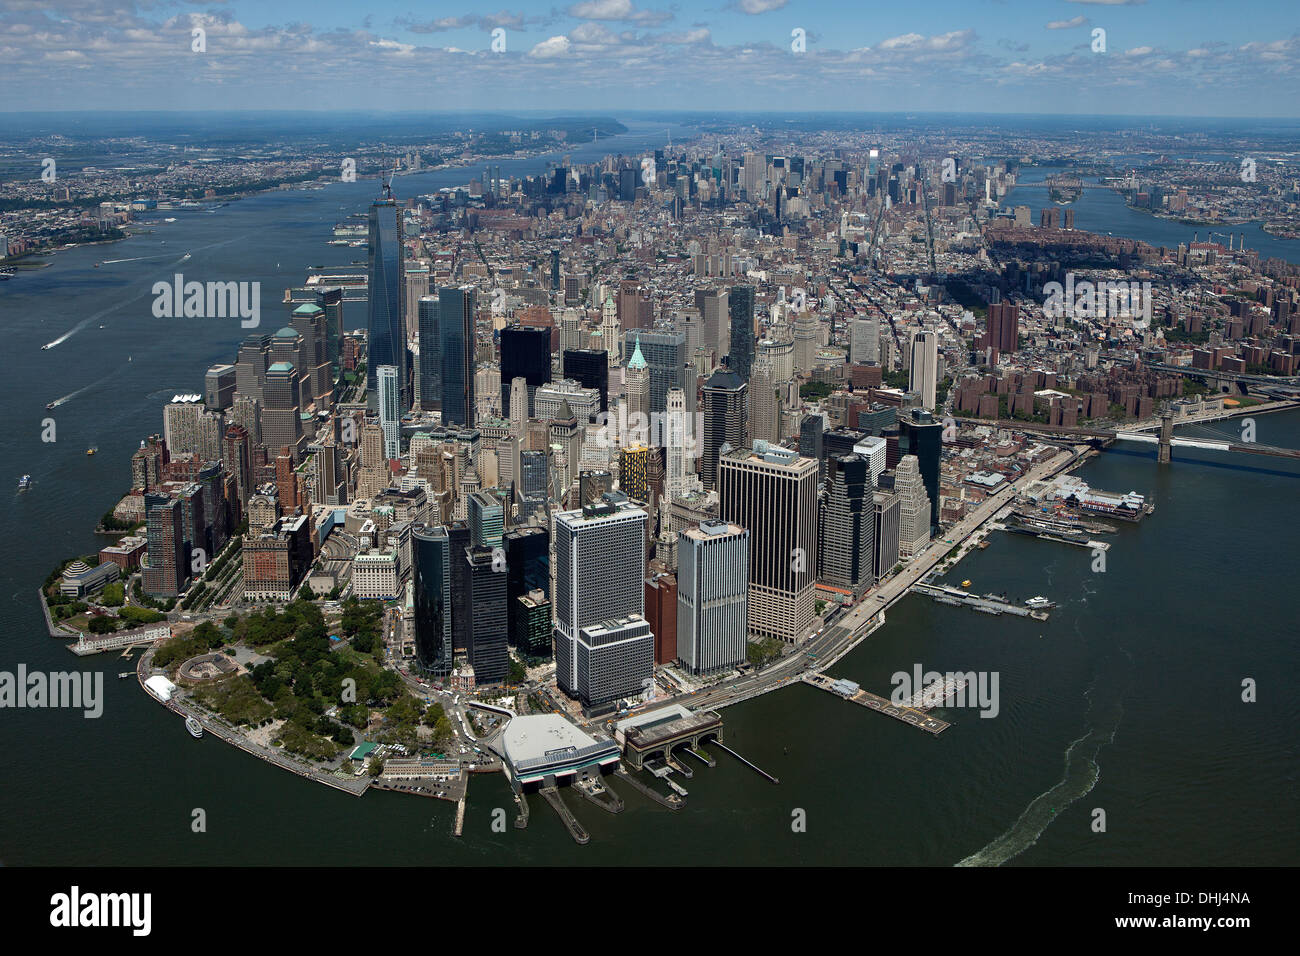 Photographie aérienne du Lower Manhattan, South Ferry, Battery Park, New York City Banque D'Images